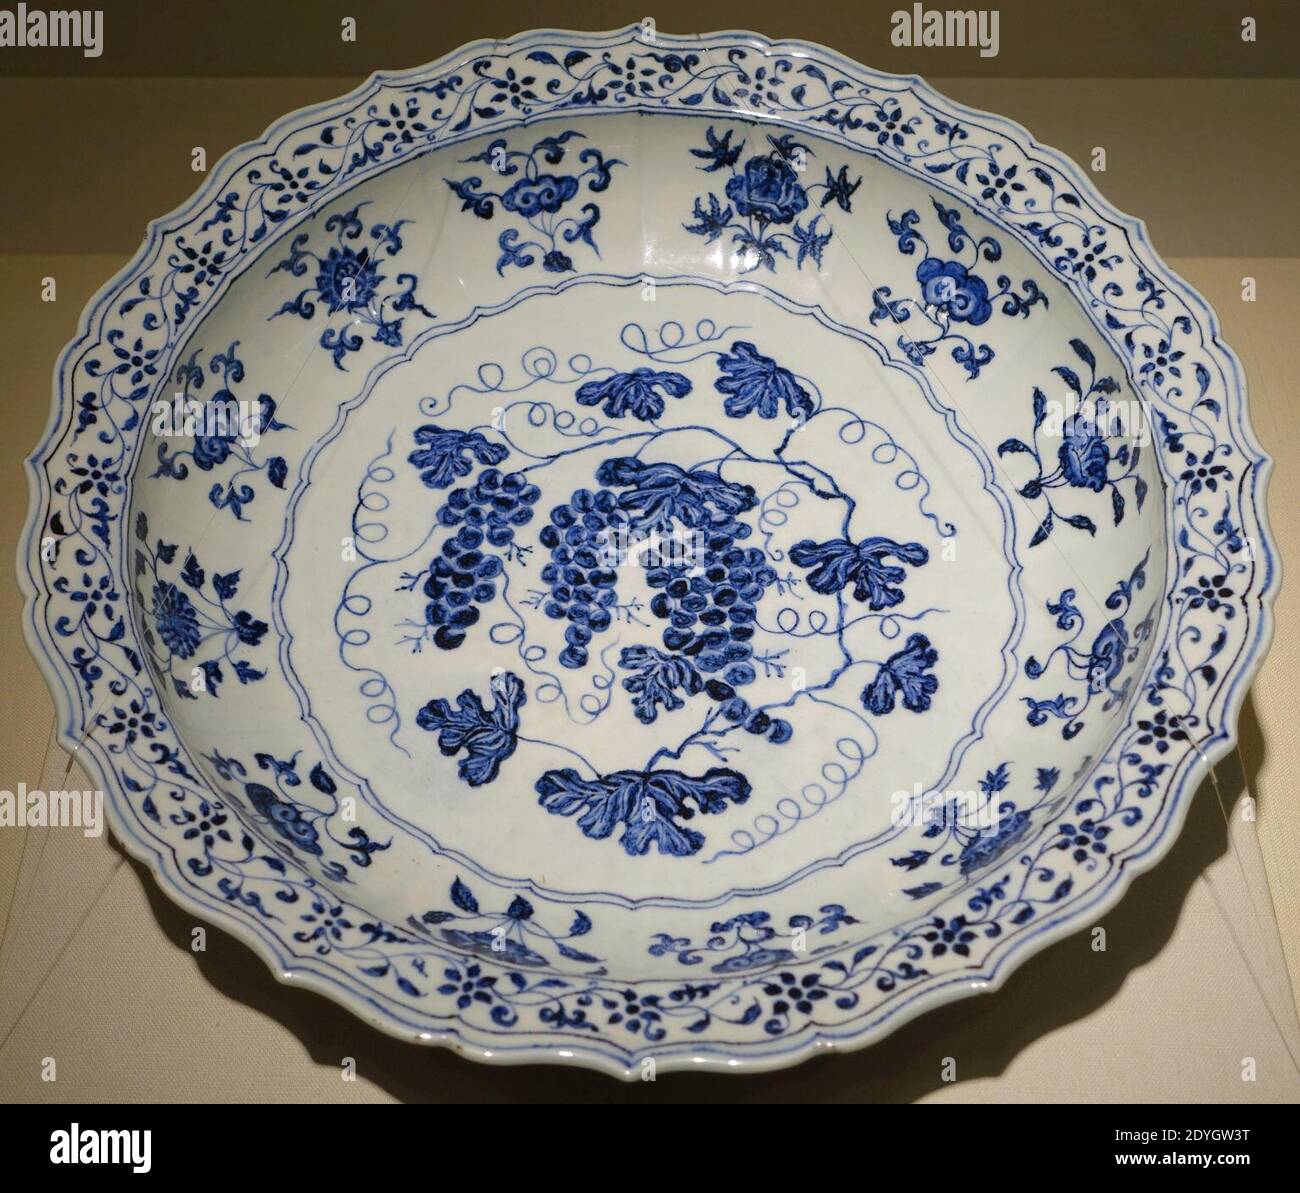 Piatto grande con vitigno, Cina, forno Jingdezhen, dinastia Ming, periodo Yongle, 1403-1424 d.C., blu e bianco - Matsuoka Foto Stock